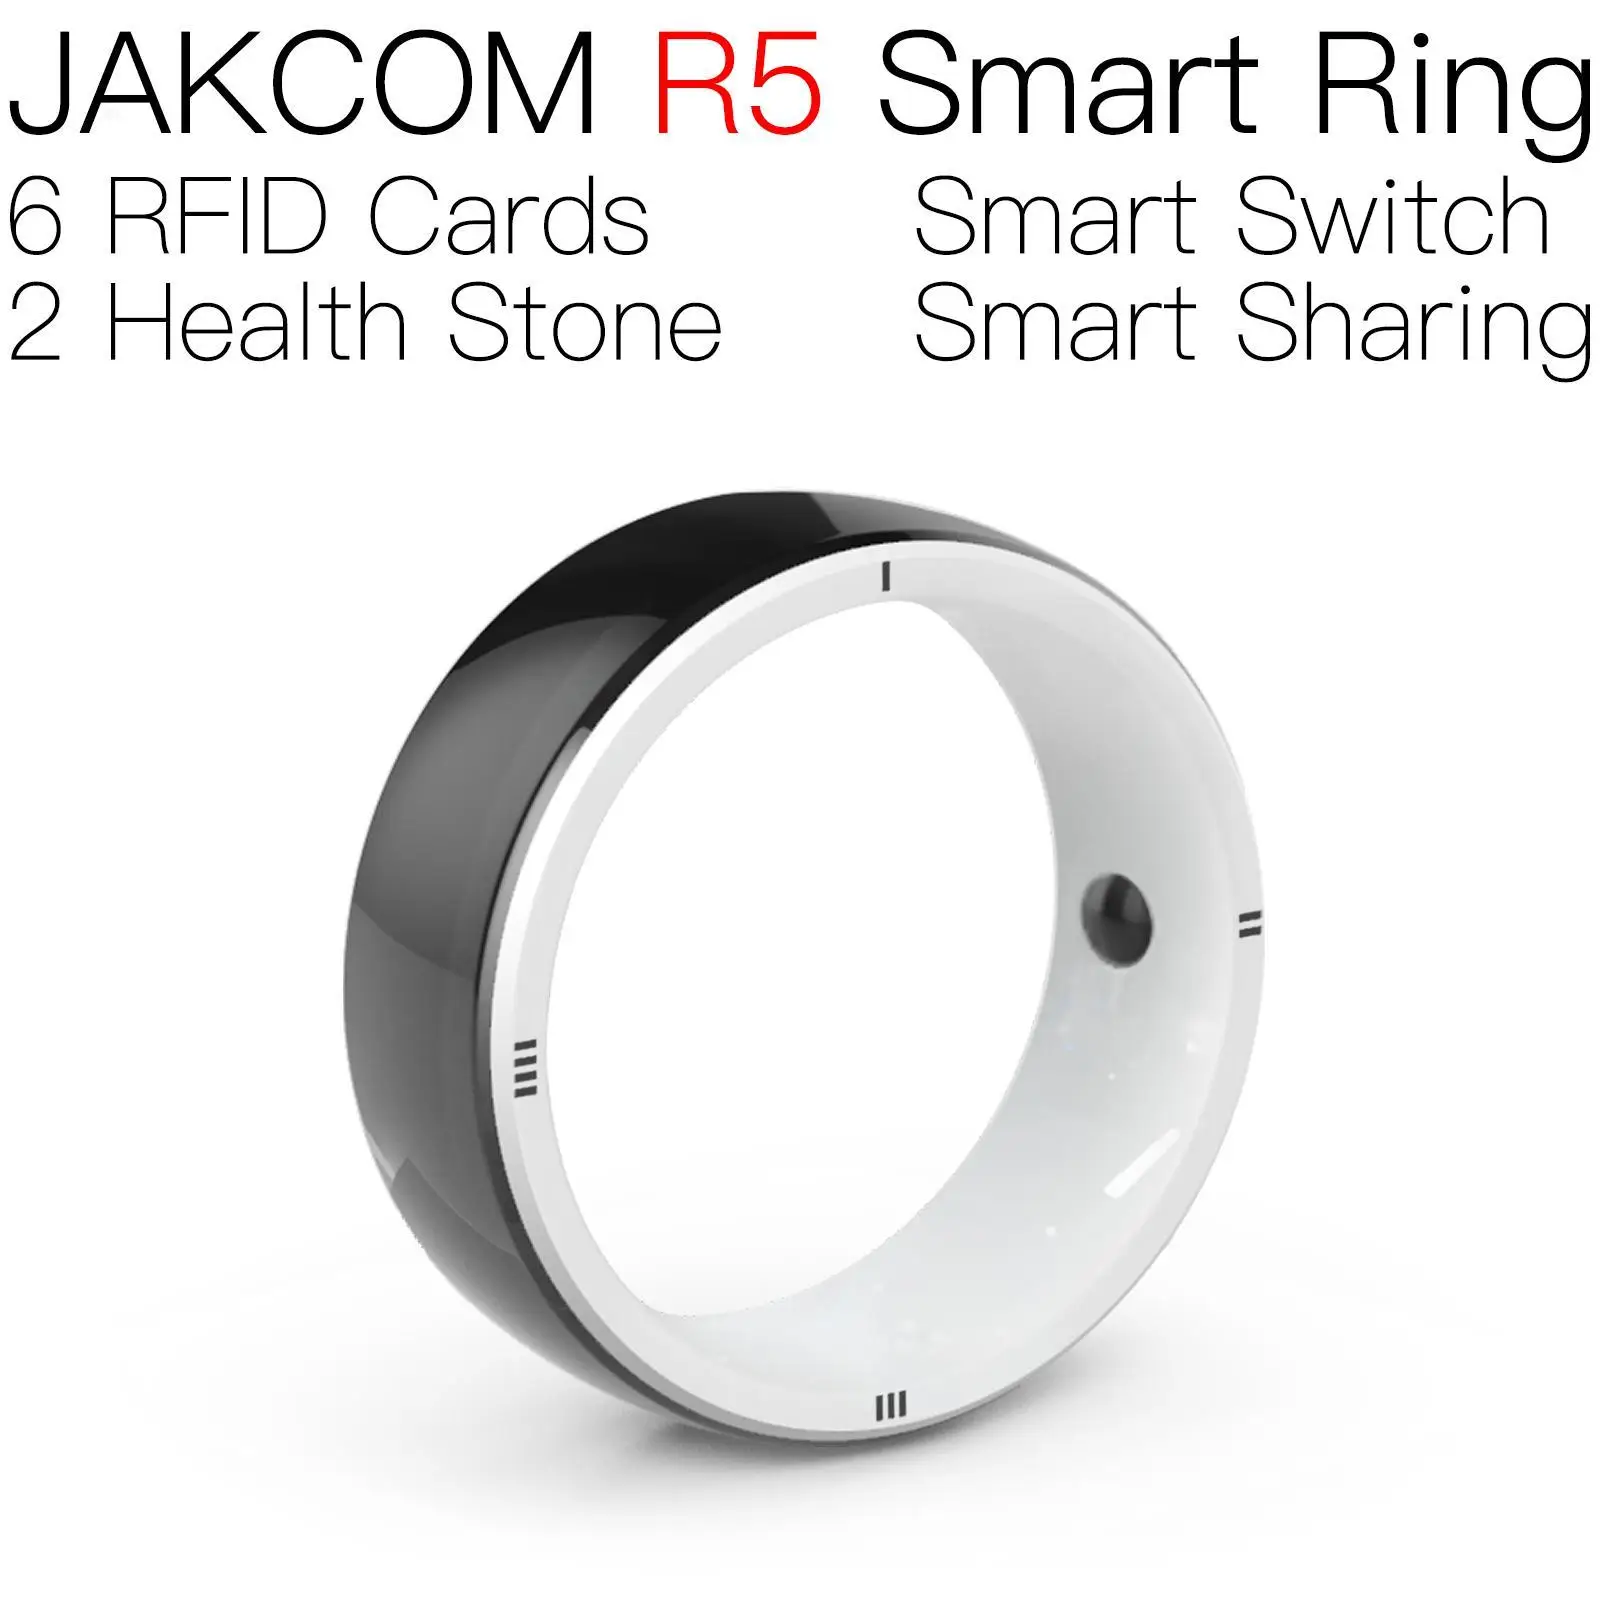 

Умное кольцо JAKCOM R5, лучше, чем nfc-метка, карта rfid, перезаписываемый uid grafik, низкий профиль, новое пользовательское предложение с бесплатной доставкой bovine